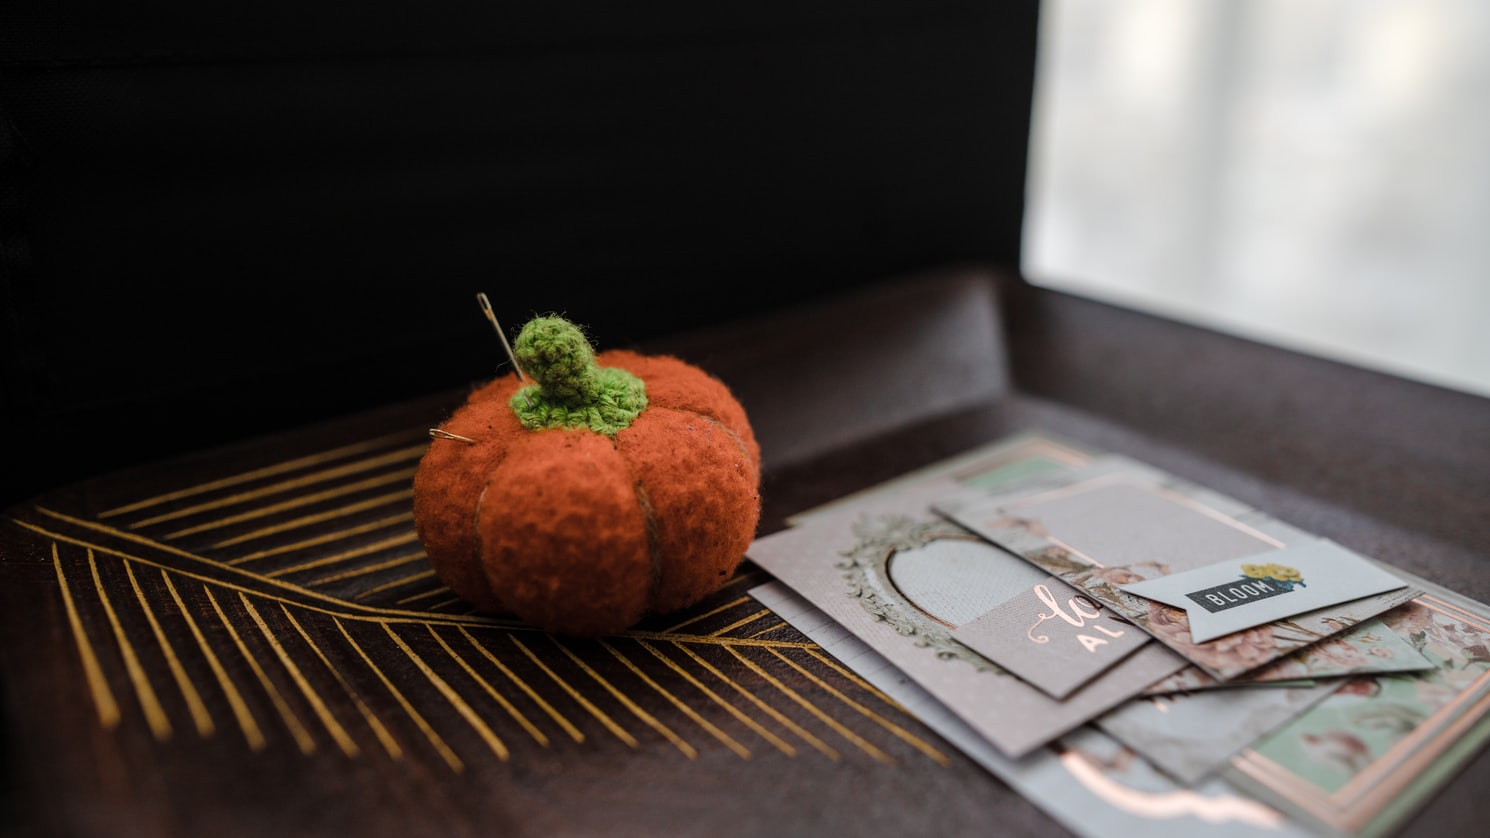 A pincushion shaped as a pumpkin is next to scrapbook paper art supplies